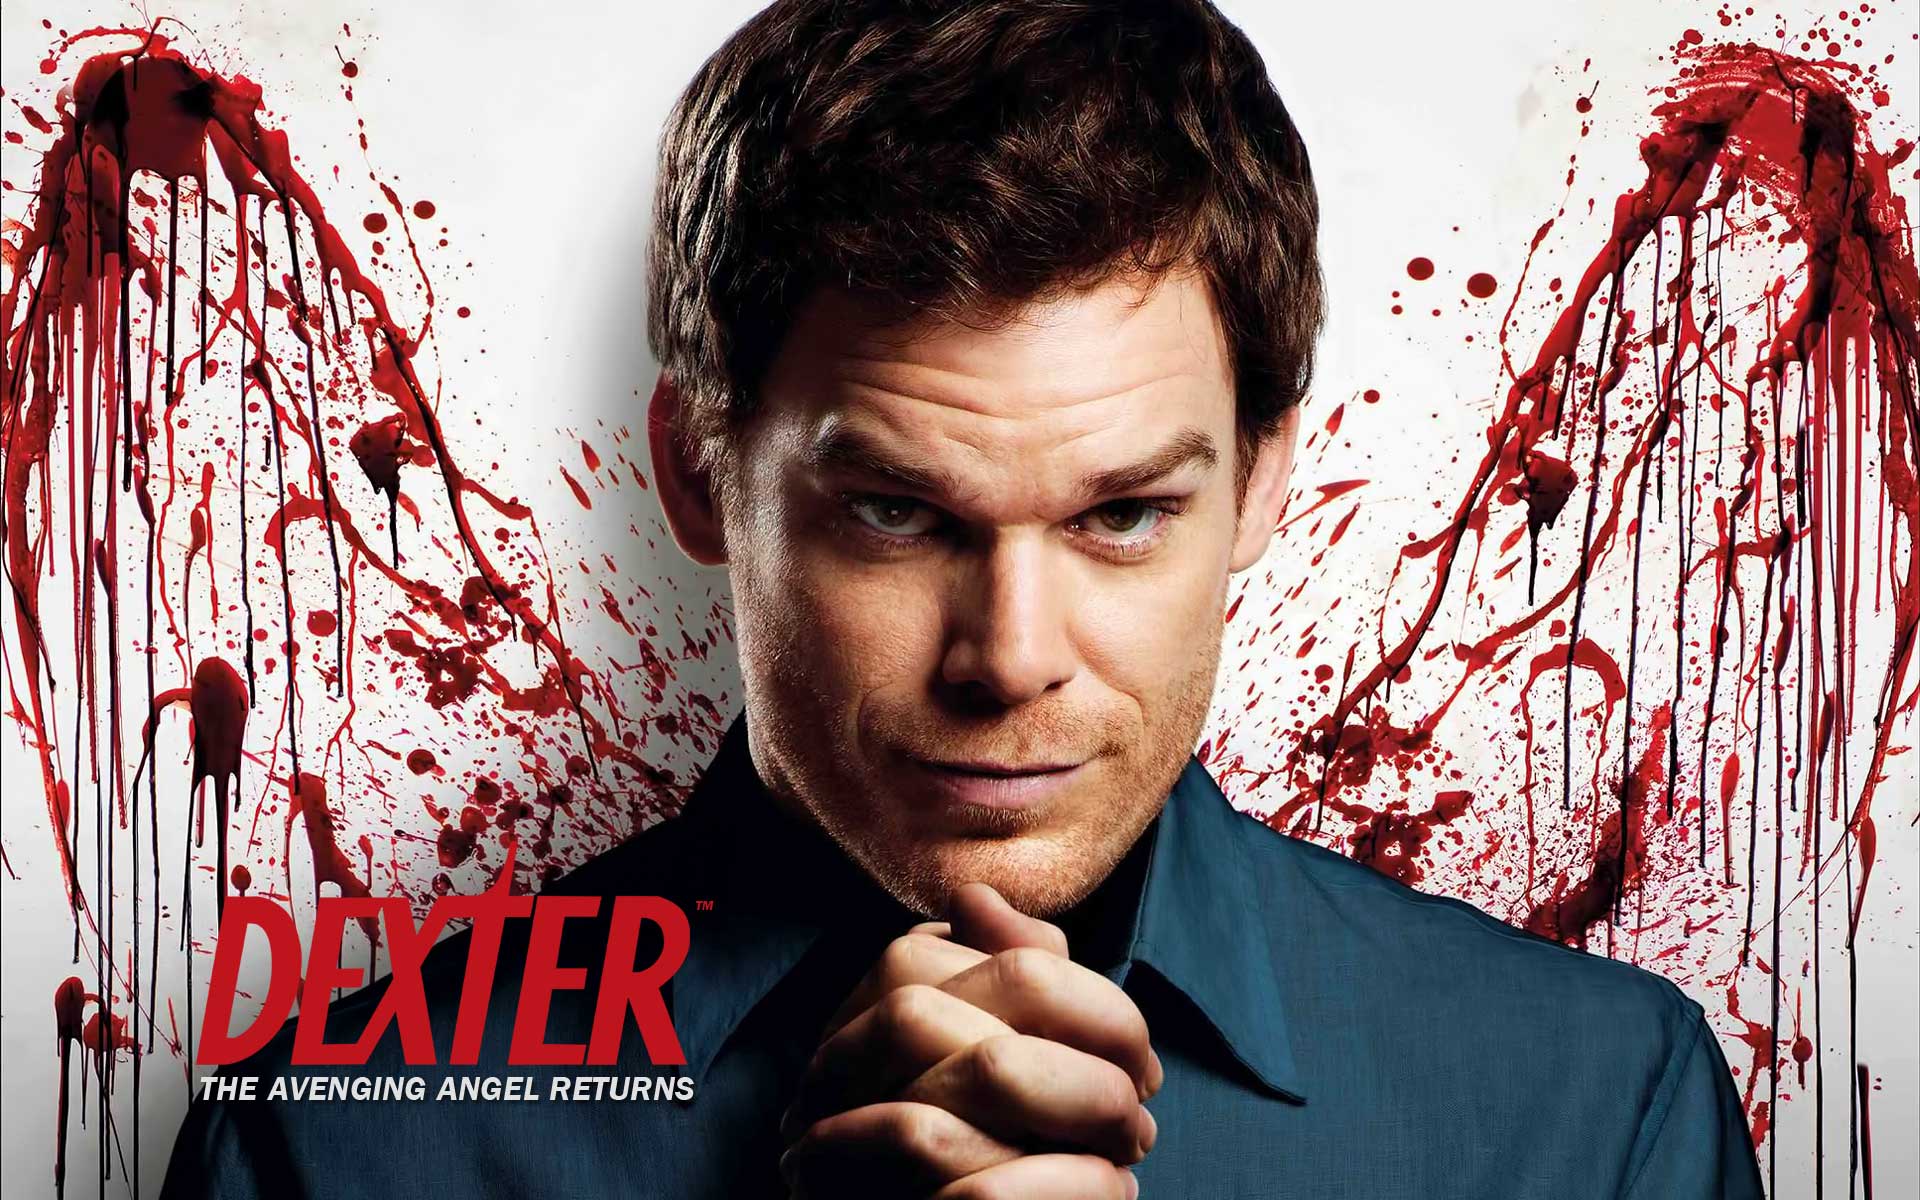 A existat un Dexter cu adevărat? Cunoscutul serial este bazat pe faptele reale ale unui criminal care a ucis peste 70 de persoane